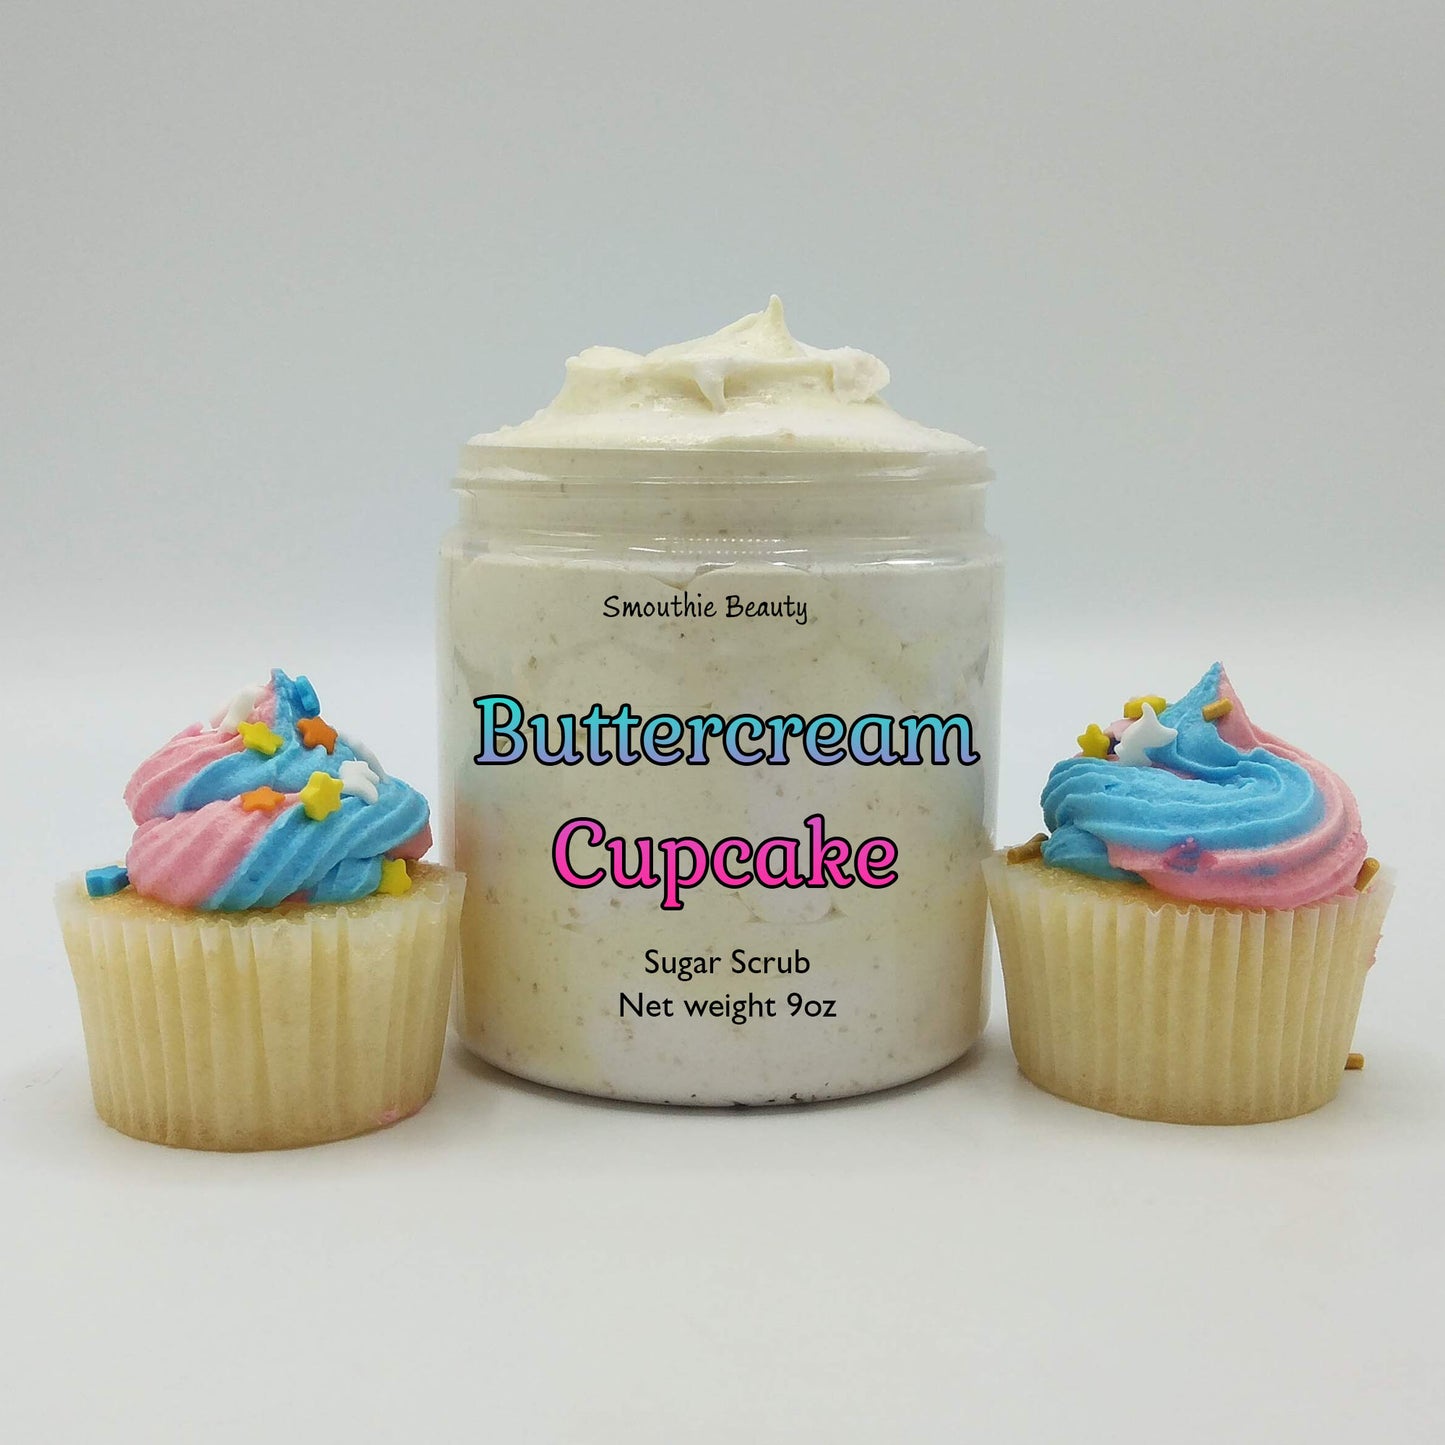 Buttercream Cupcake Foaming Sugar Scrub